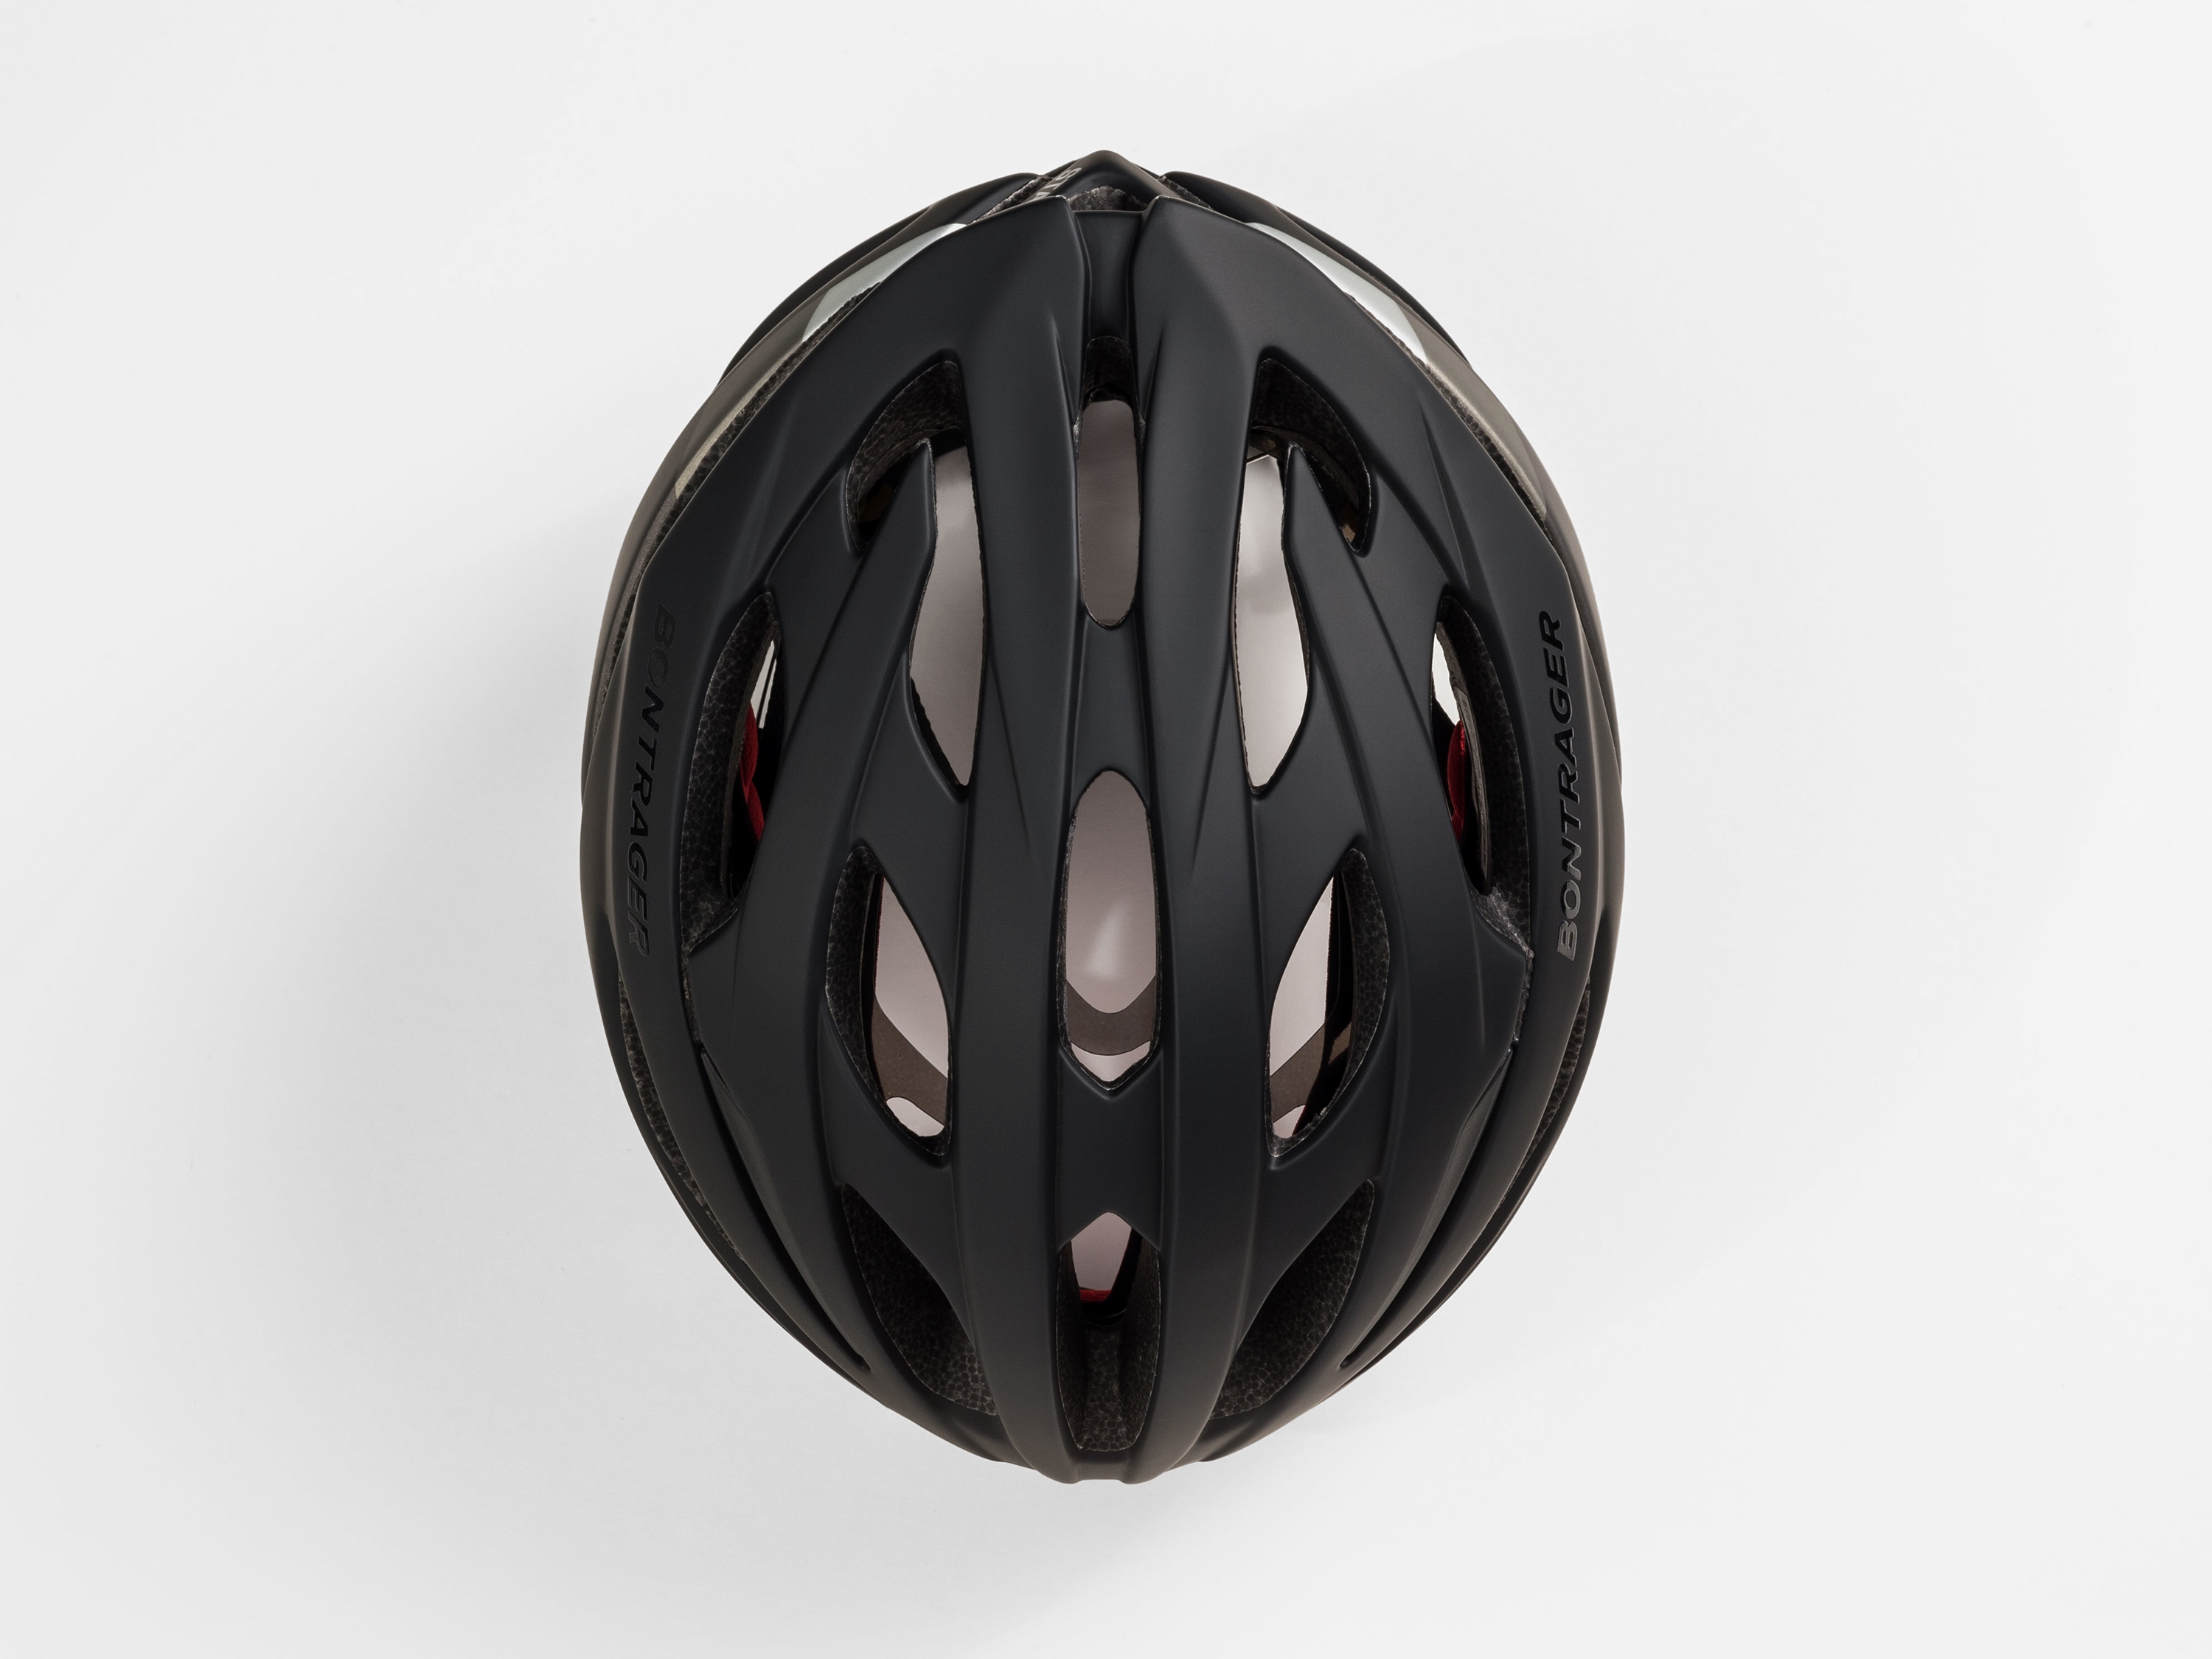 bontrager starvos mips women's road bike helmet